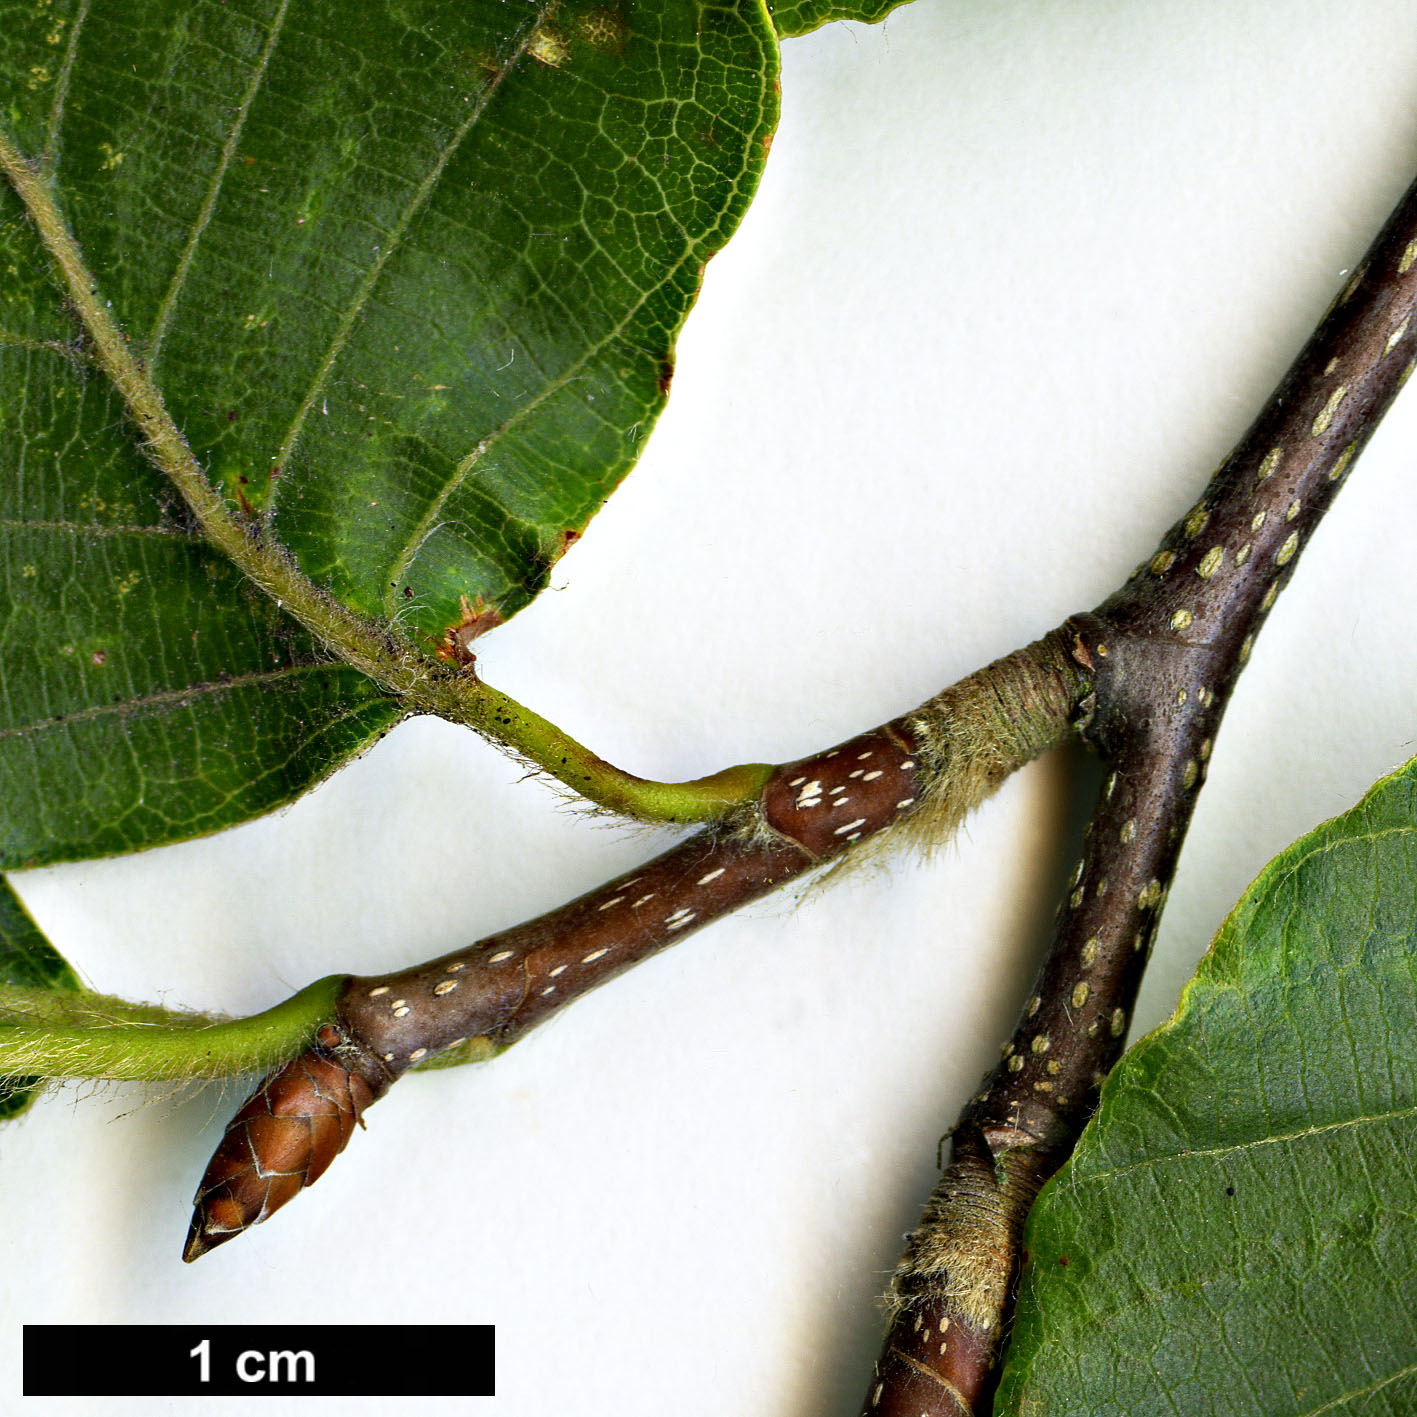 High resolution image: Family: Fagaceae - Genus: Fagus - Taxon: crenata